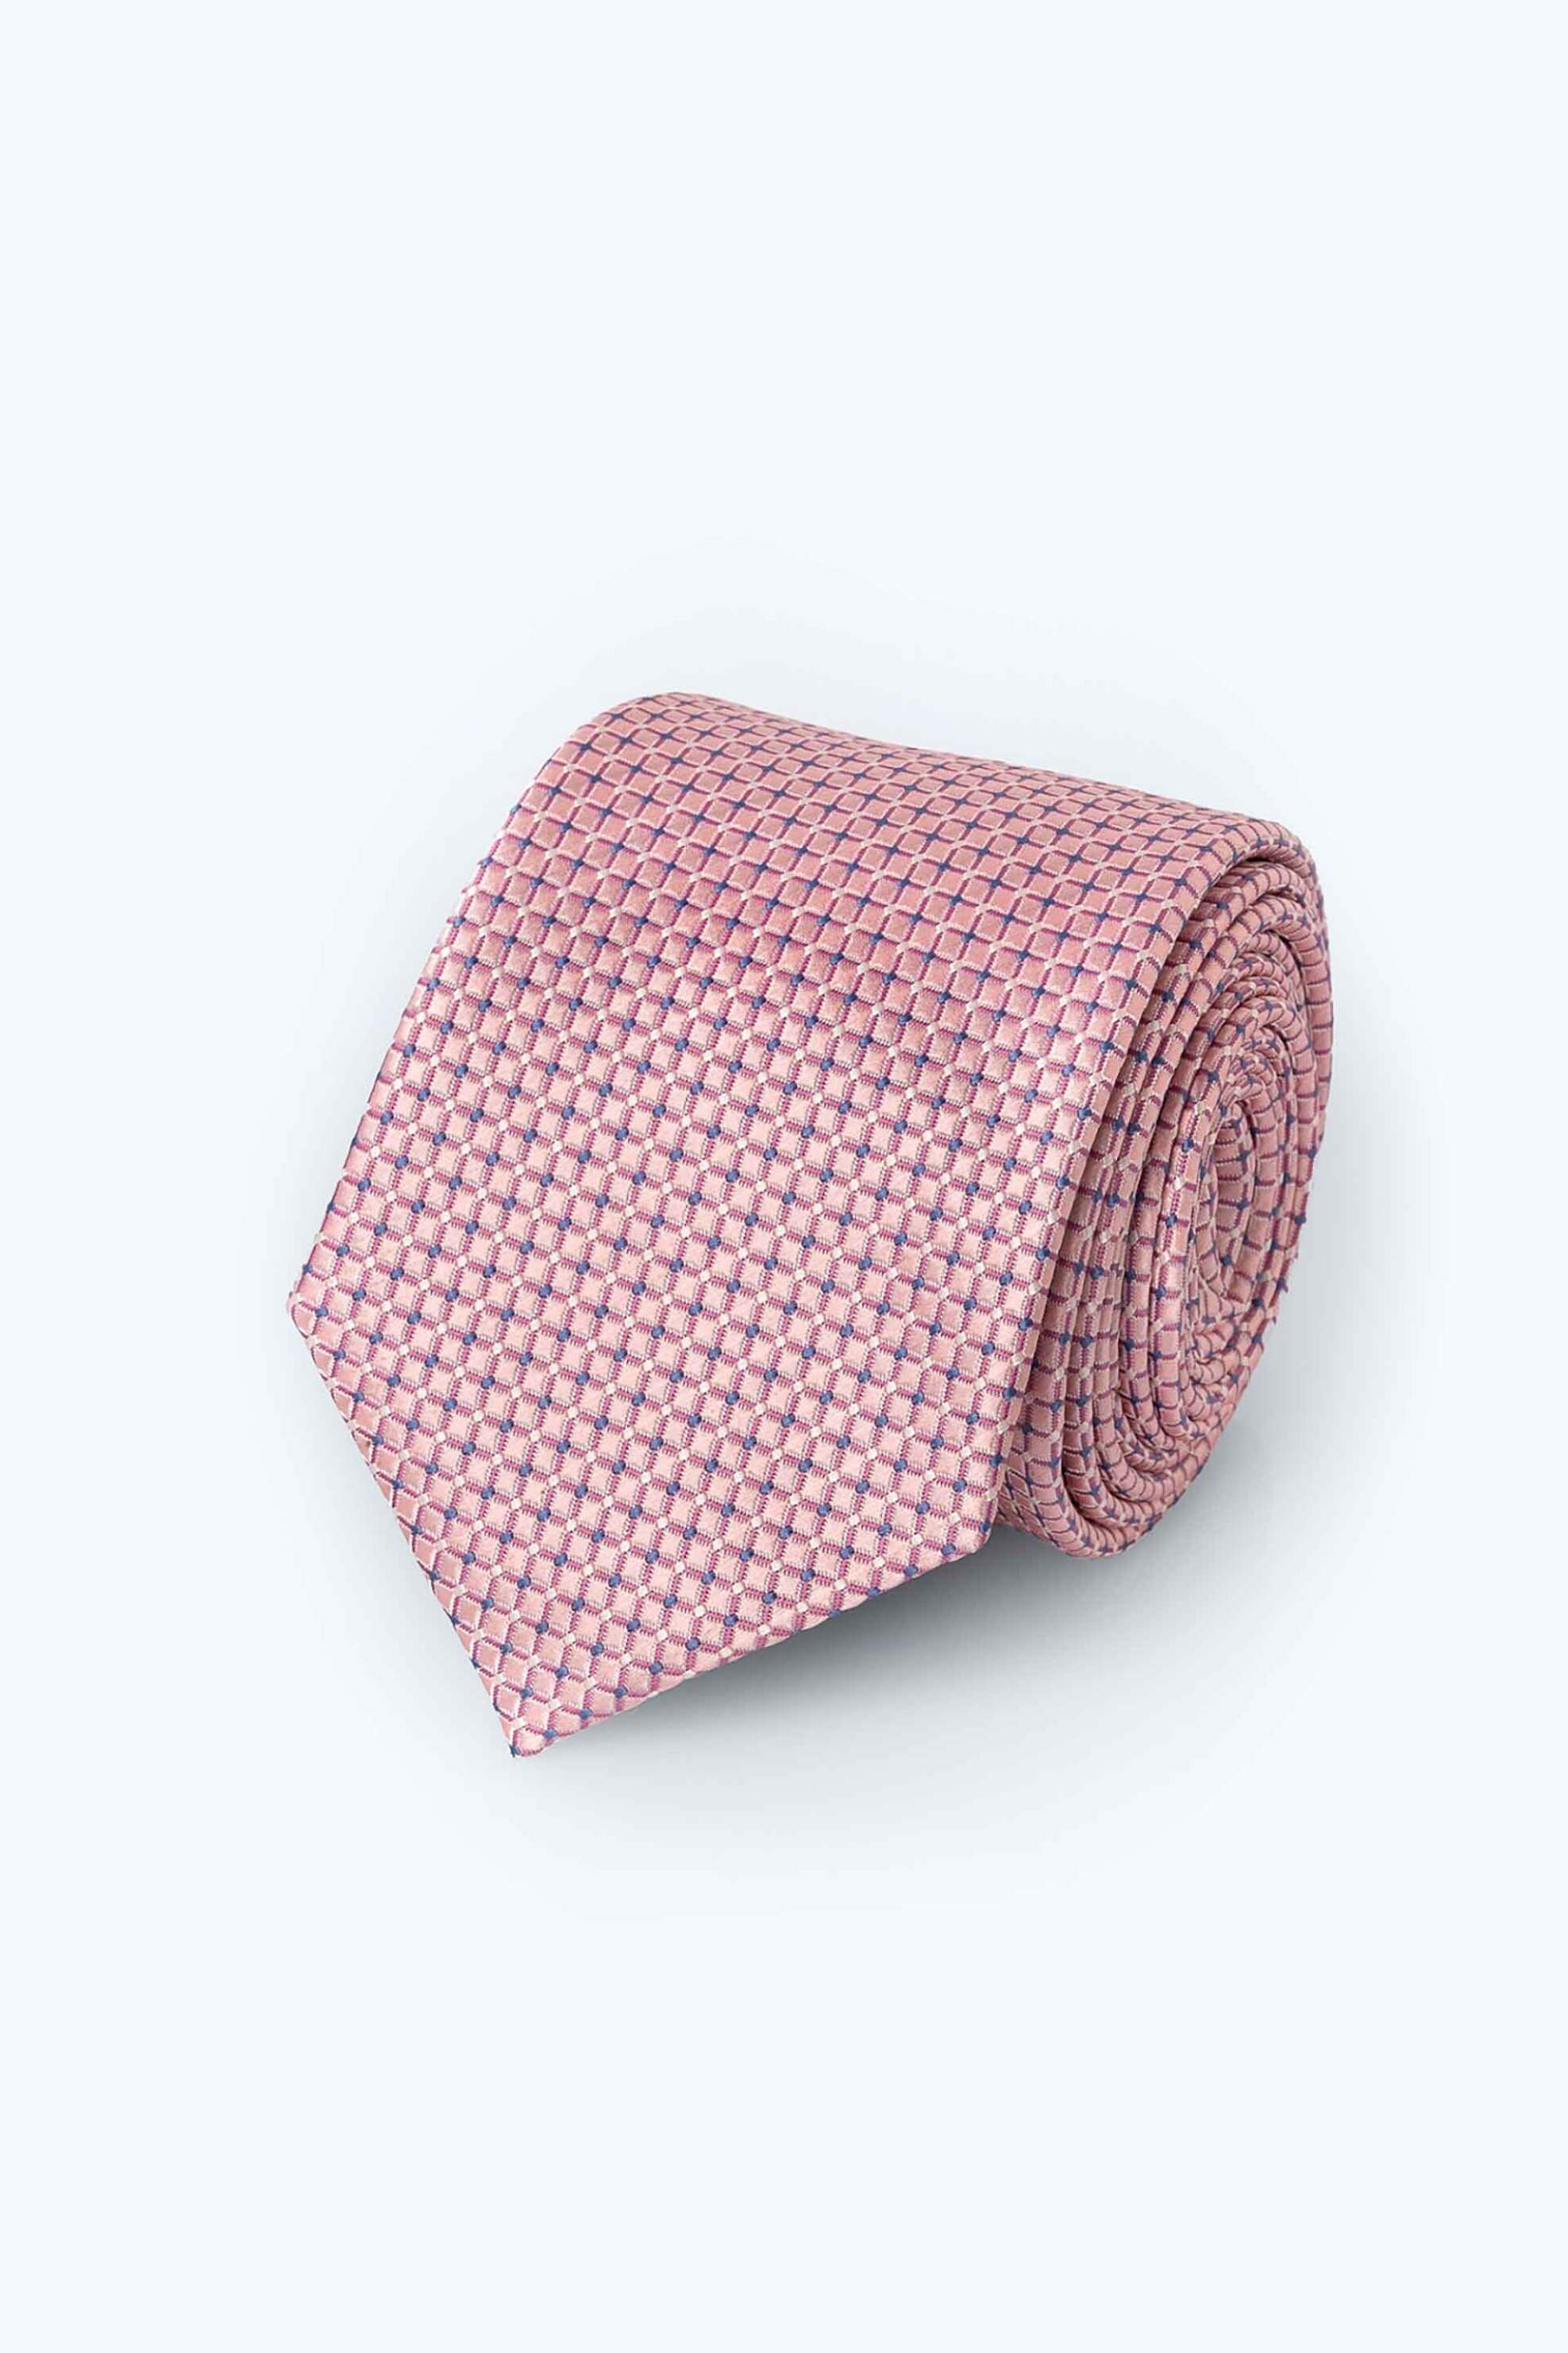 Ανδρική Μόδα > Ανδρικά Αξεσουάρ > Ανδρικές Γραβάτες & Παπιγιόν The Bostonians ανδρική γραβάτα με μικροσχέδιο "Dobby" - TIE9009 Ροζ